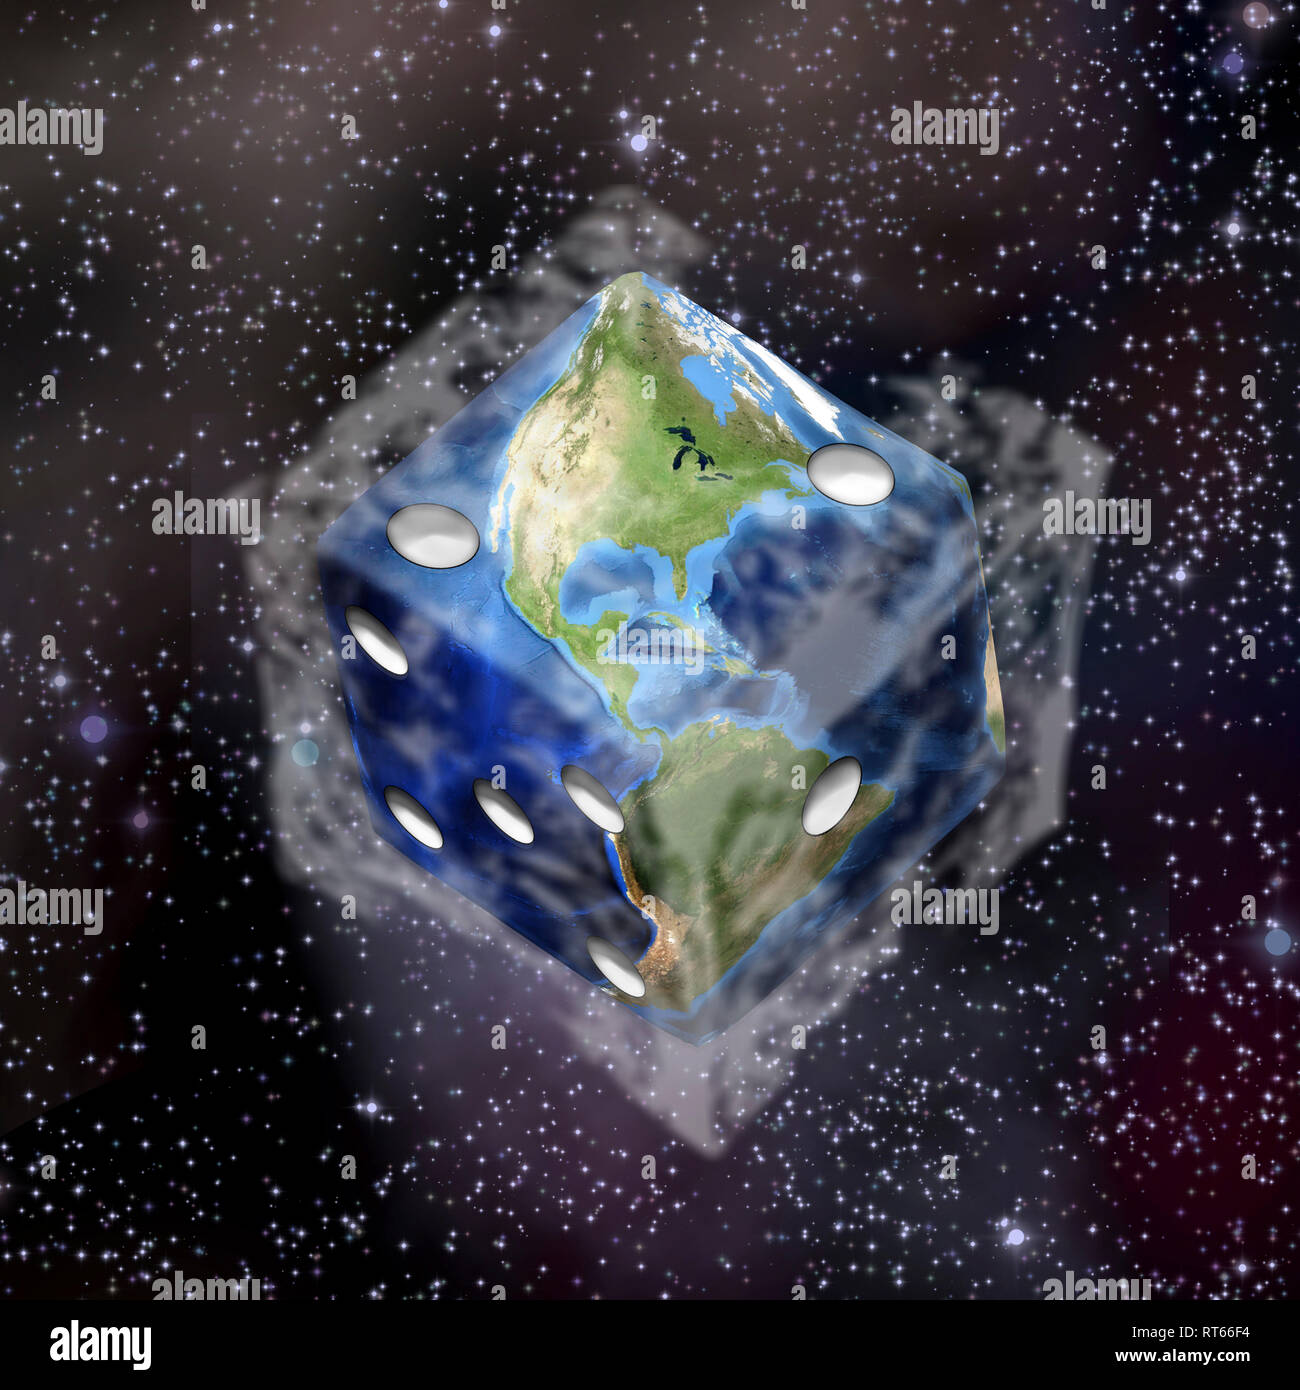 Planet Erde in Würfel Form Stockfotografie - Alamy